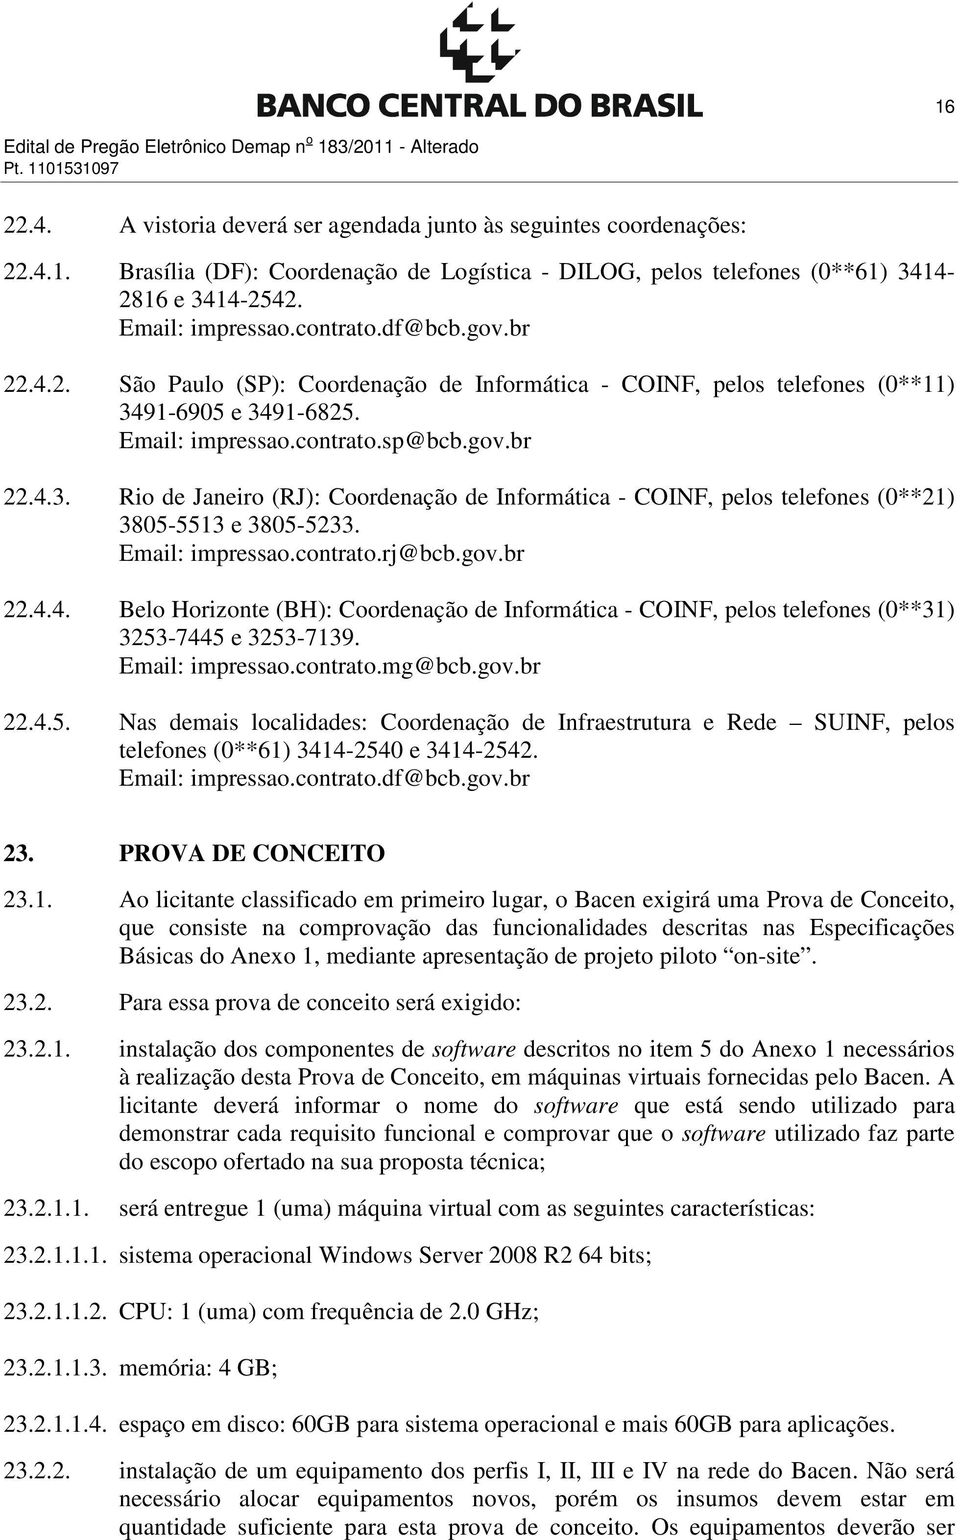 91-6905 e 3491-6825. Email: impressao.contrato.sp@bcb.gov.br 22.4.3. Rio de Janeiro (RJ): Coordenação de Informática - COINF, pelos telefones (0**21) 3805-5513 e 3805-5233. Email: impressao.contrato.rj@bcb.